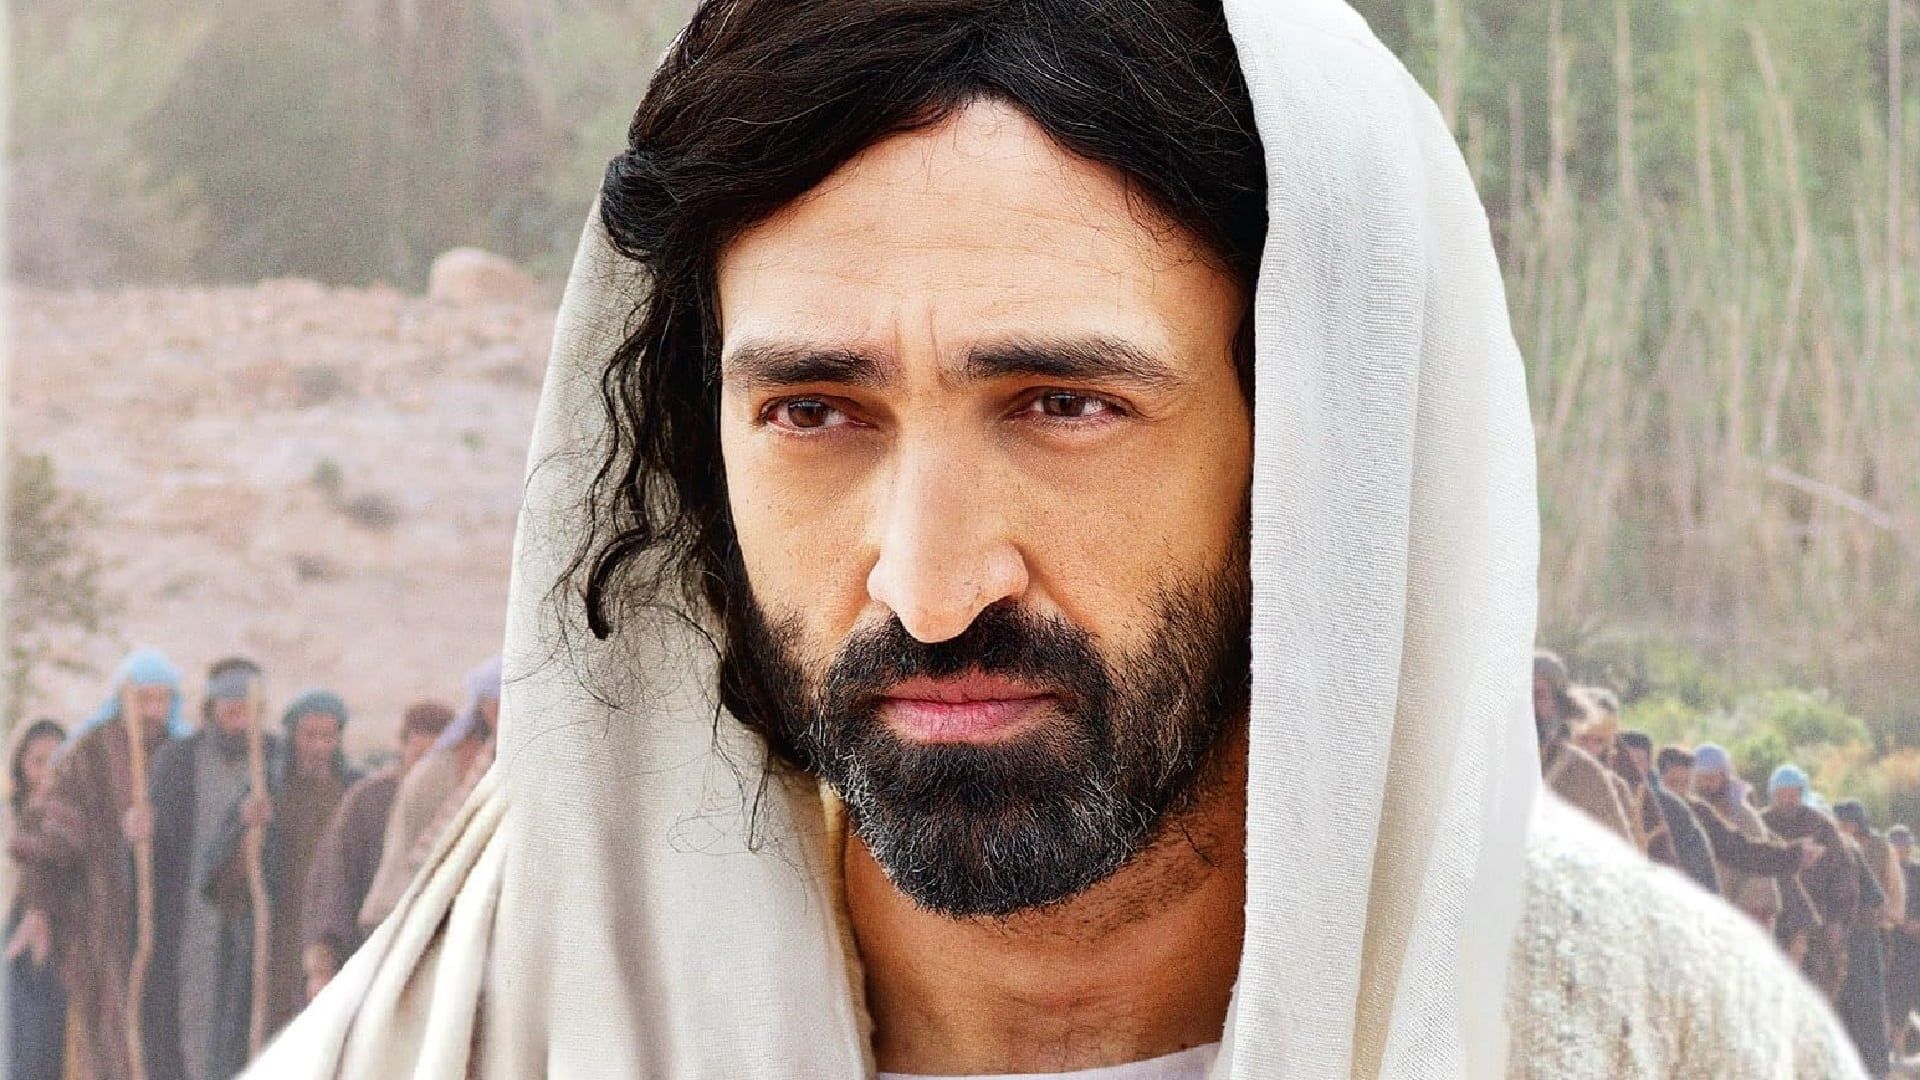 The Gospel of Luke background